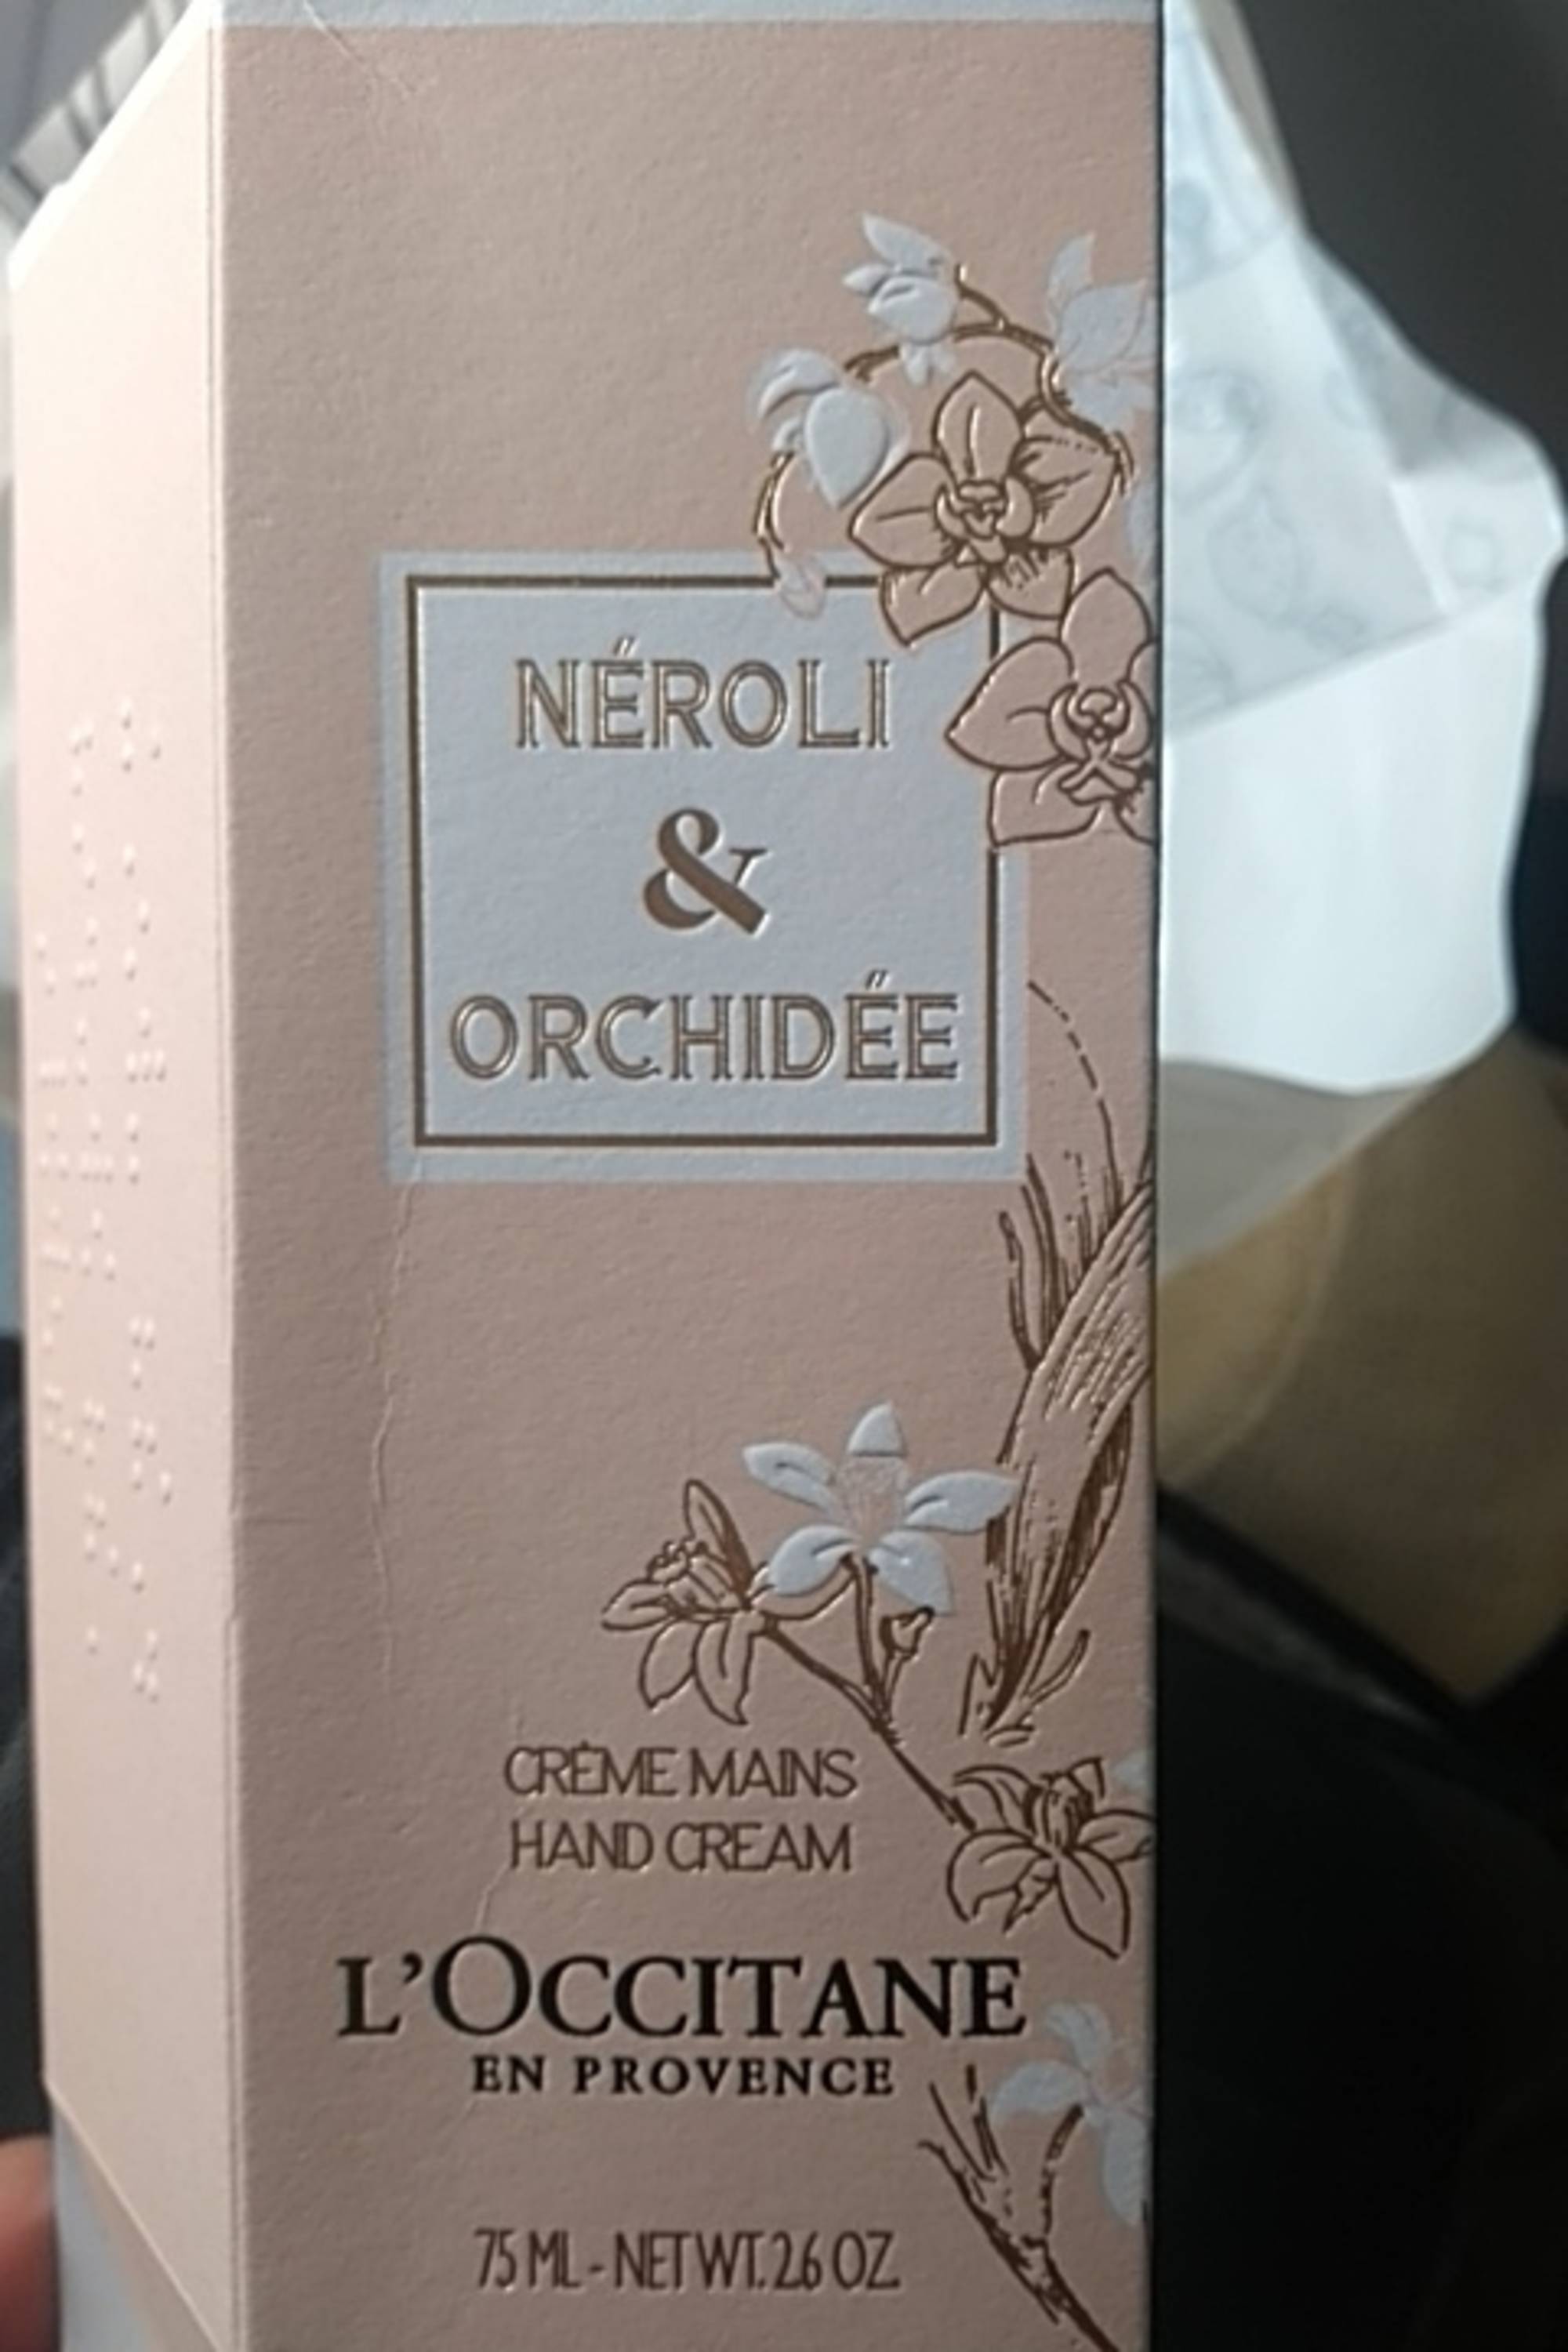 L'OCCITANE - Néroli & orchidée - Crème mains 